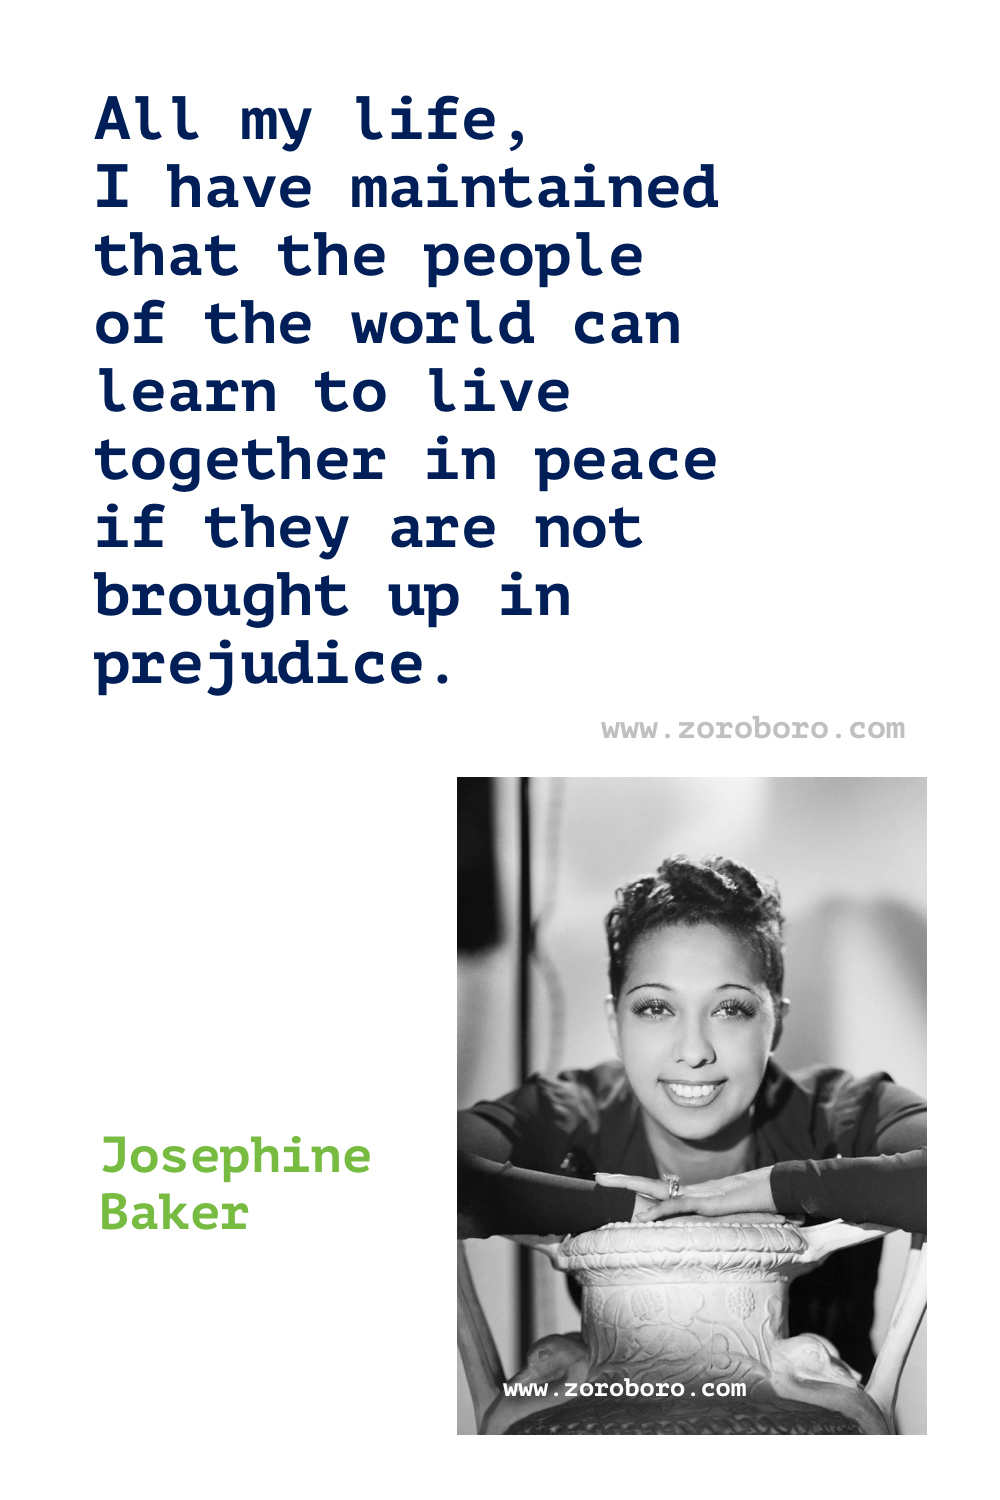 Josephine Baker Quotes, Josephine Baker Dancer, Josephine Baker Dancing Quotes, Josephine Baker French dancer.